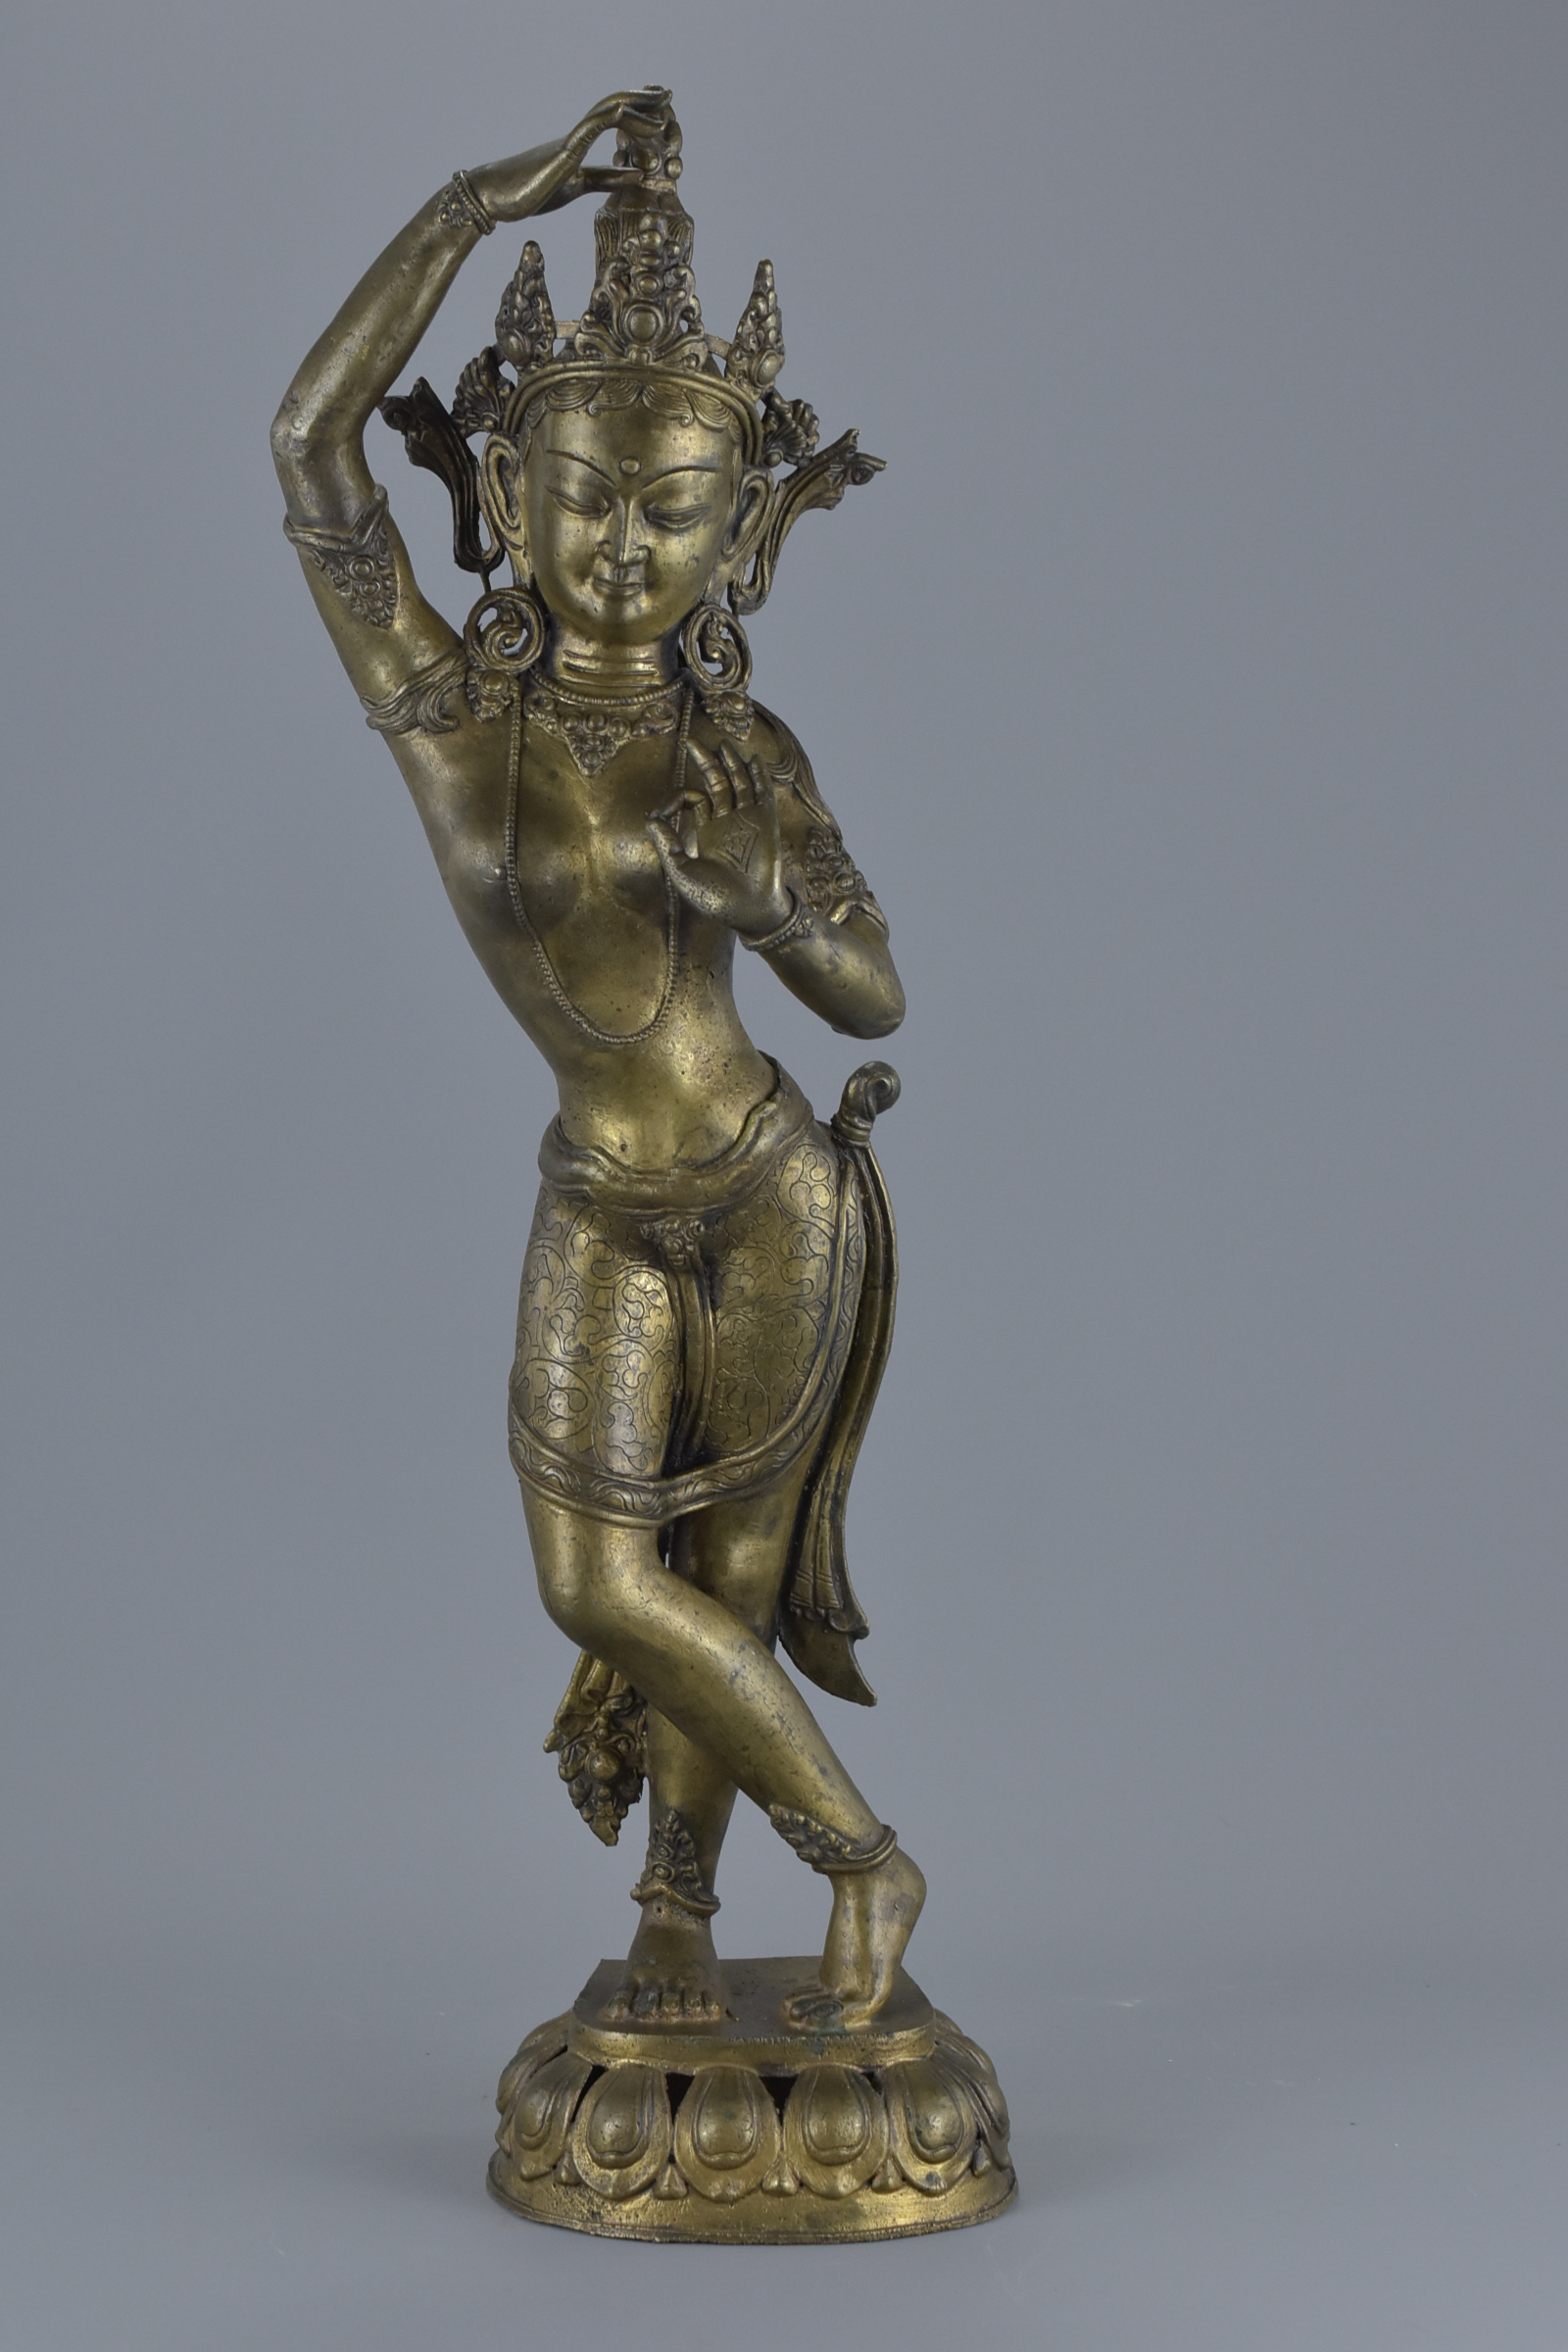 A tall Tibetan bronze standing dancing Tara figure on stand. 57Cm tall